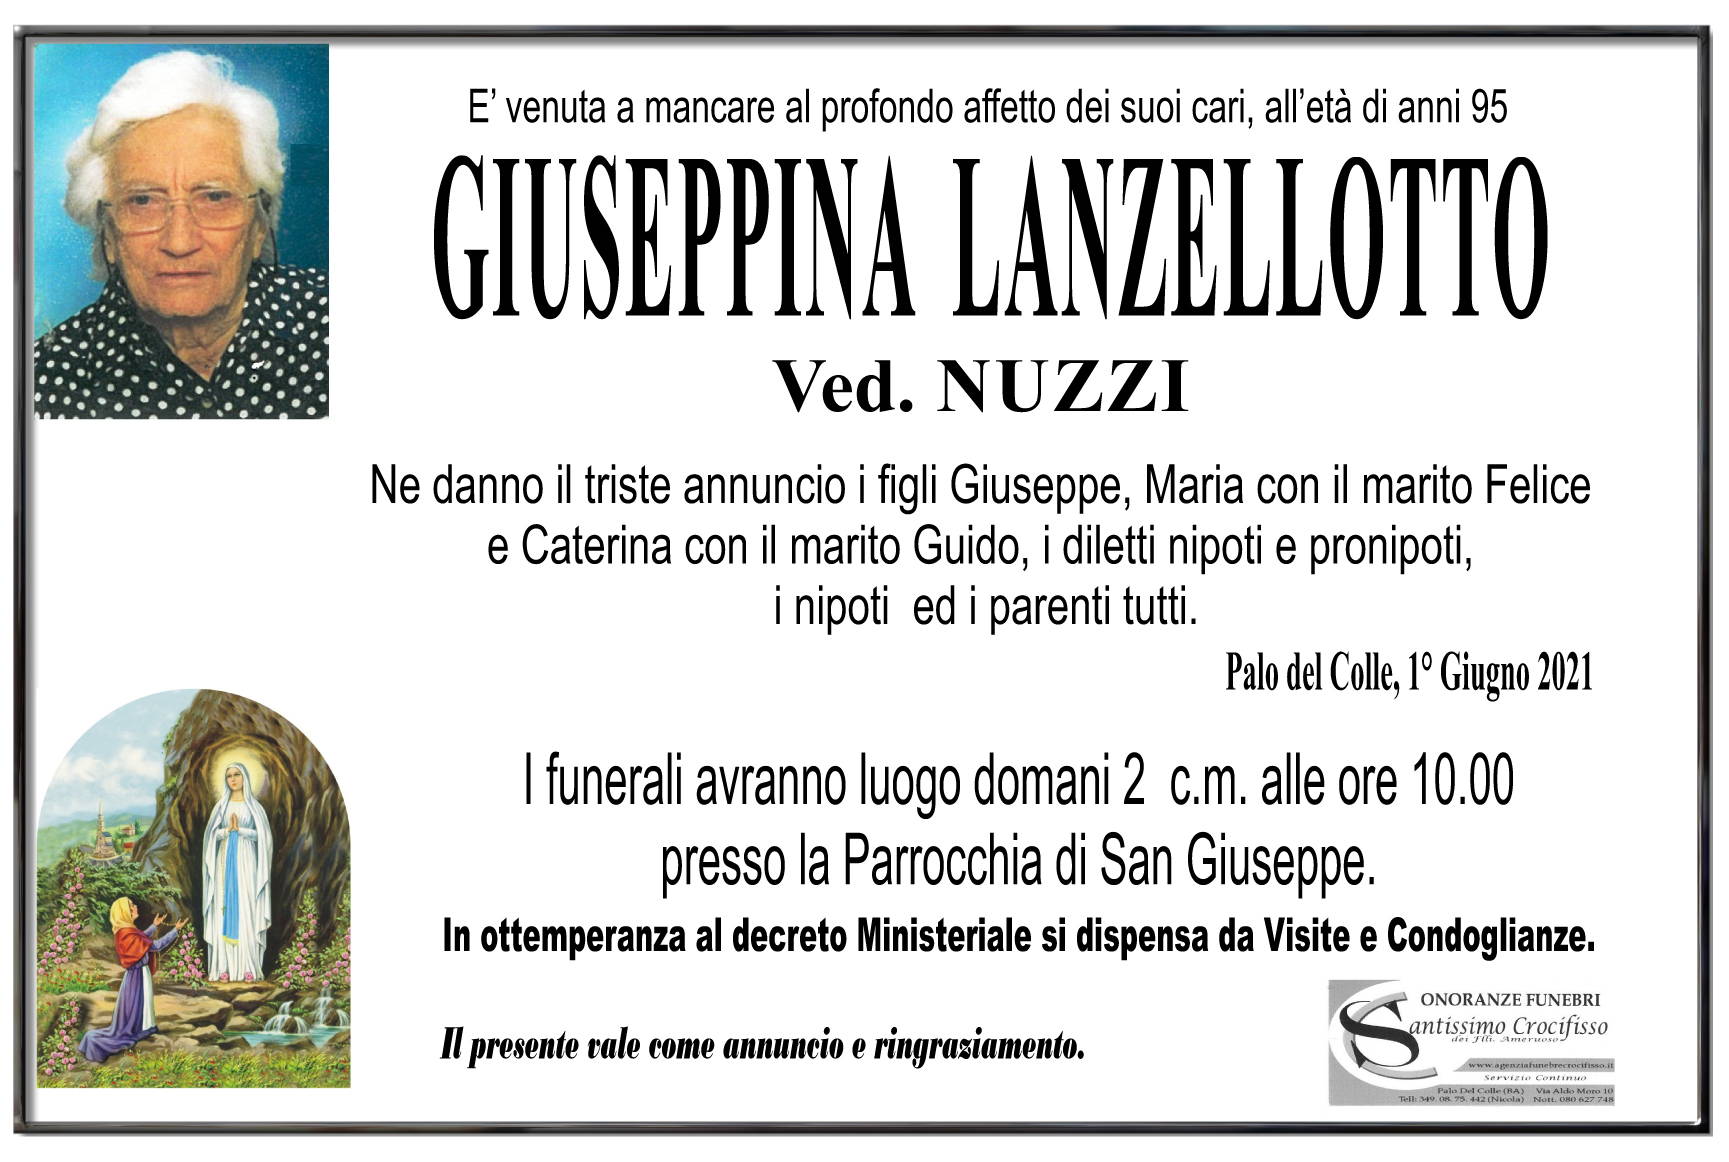 Giuseppina Lanzelotto